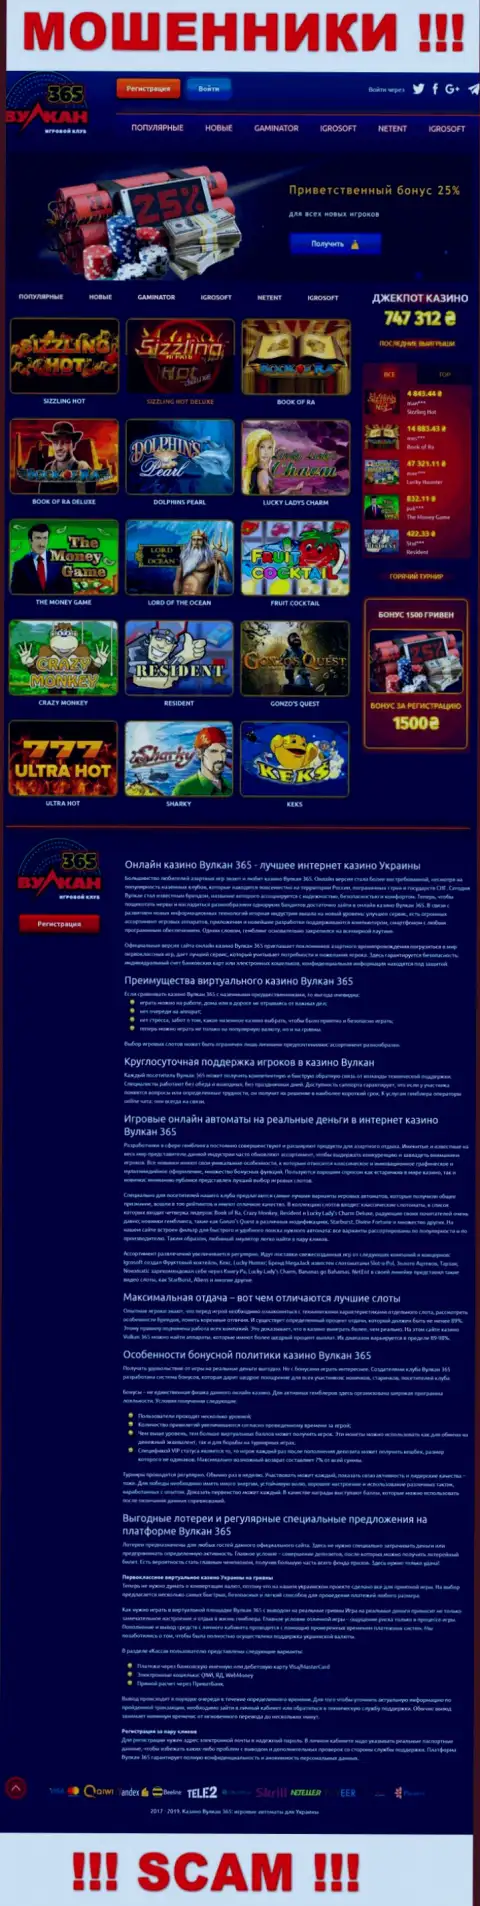 Официальный веб-сайт Vulkan365 Bet - это яркая картинка для завлечения жертв